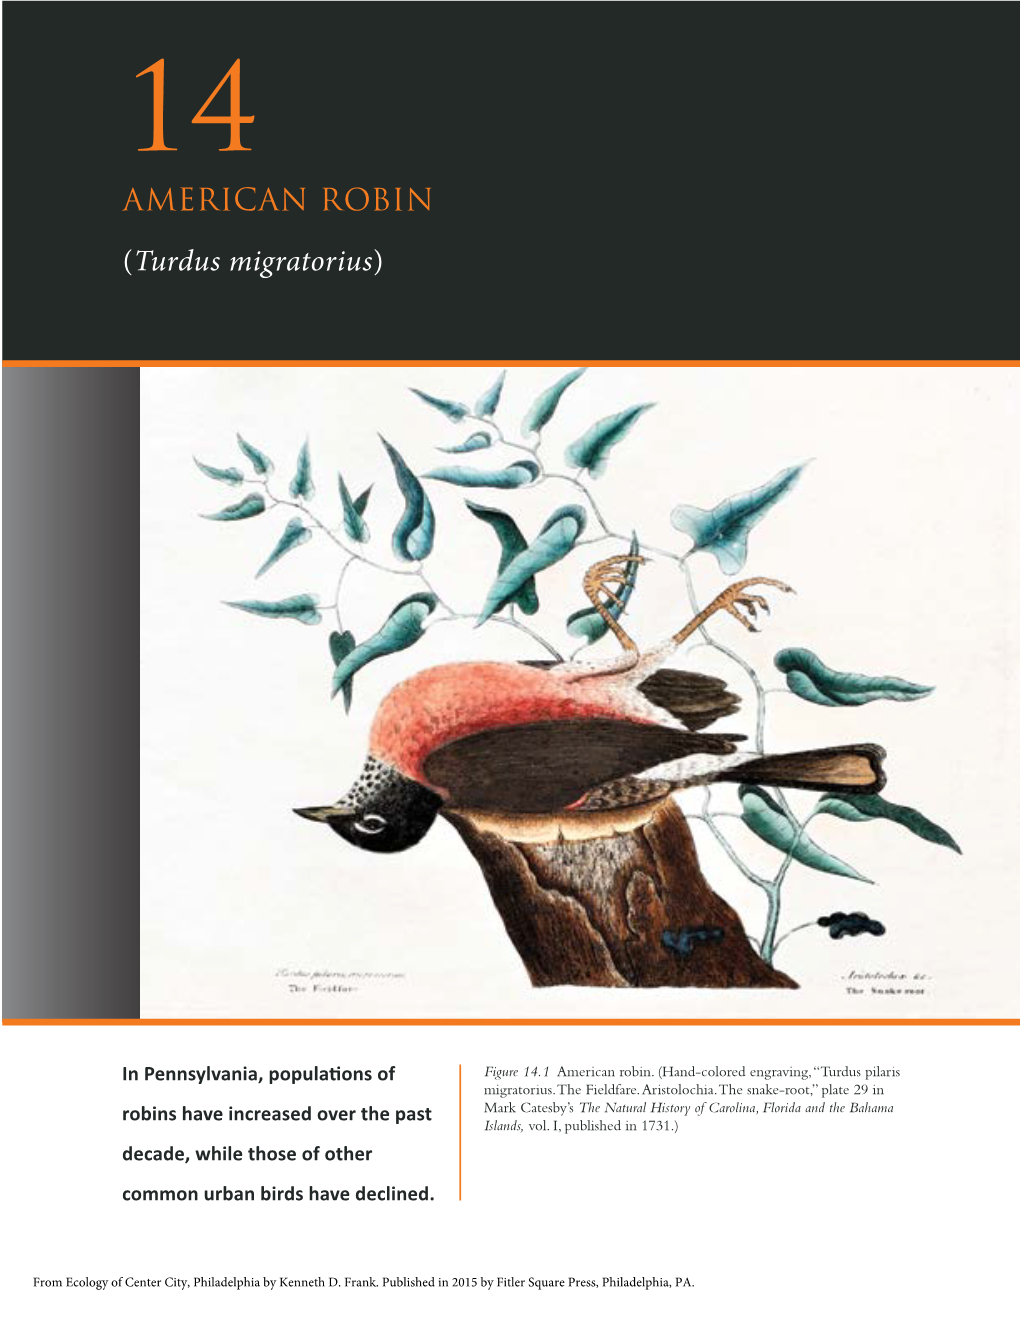 AMERICAN ROBIN (Turdus Migratorius)